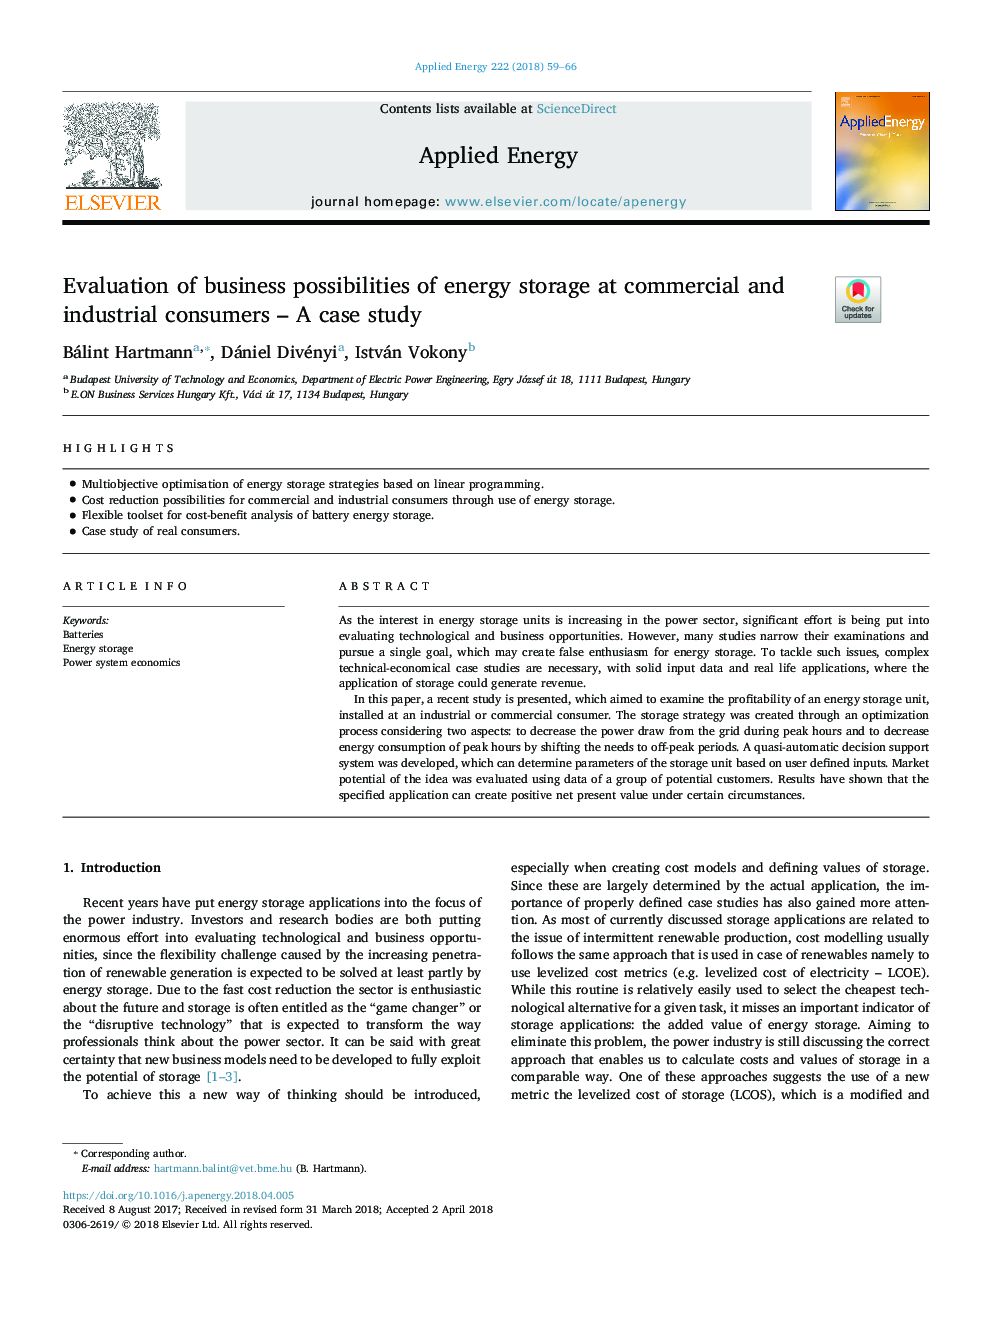 ارزیابی فرصت های تجاری ذخیره انرژی در مصرف کنندگان تجاری و صنعتی - مطالعه موردی 